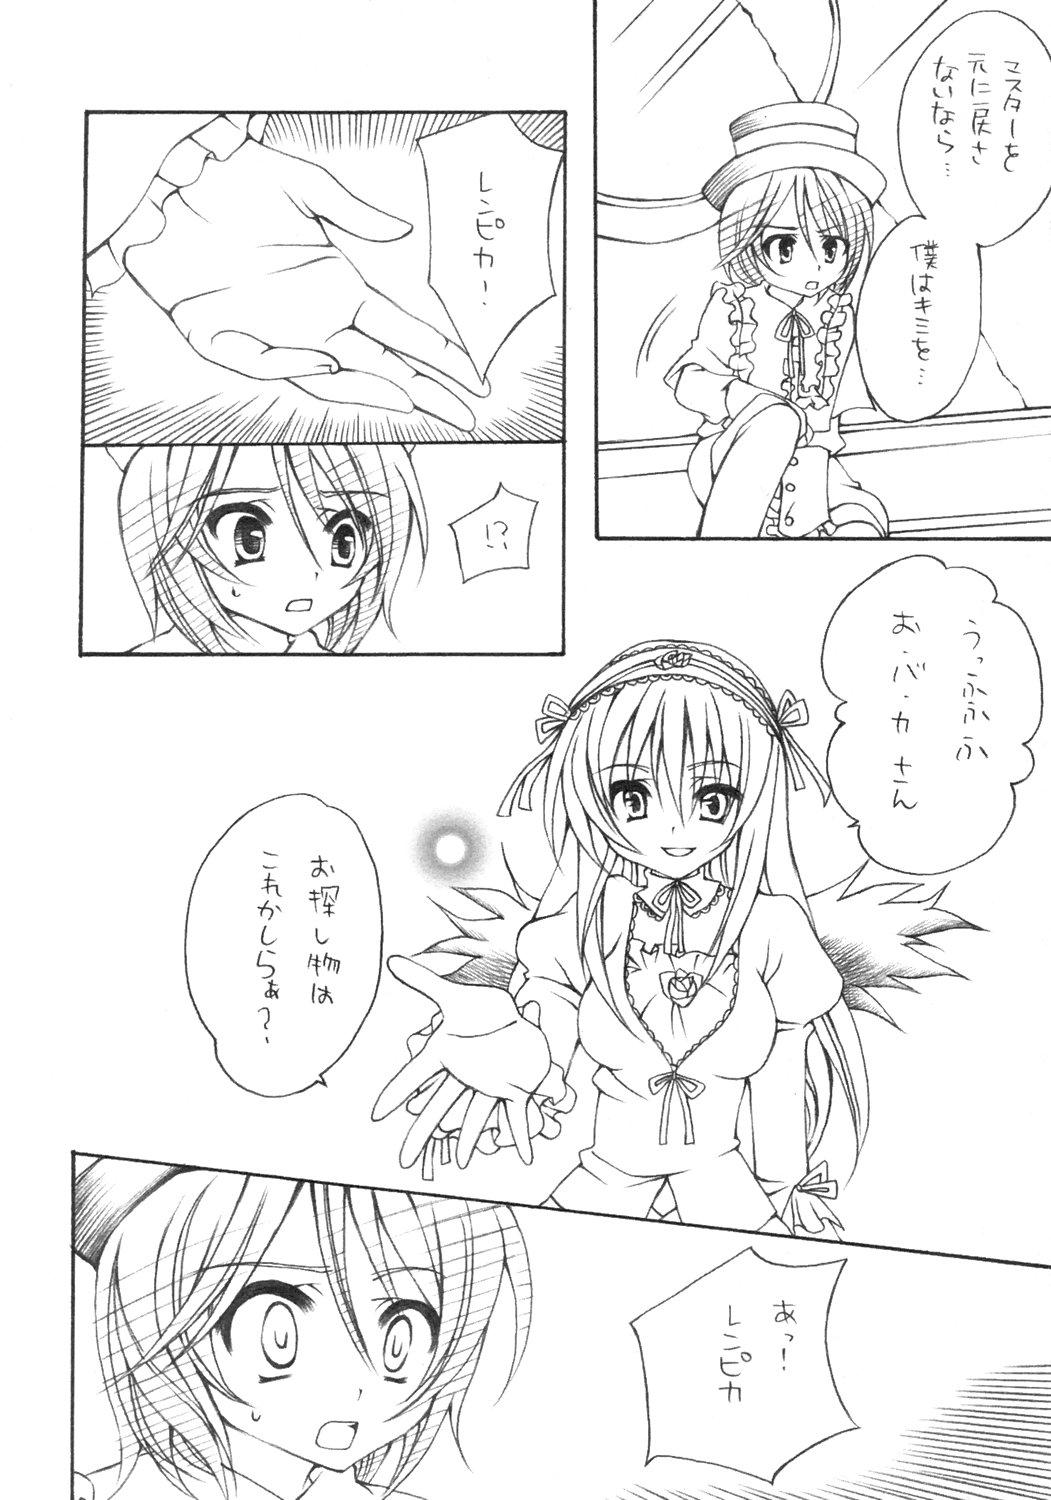 Head Insei - Rozen maiden Threesome - Page 5